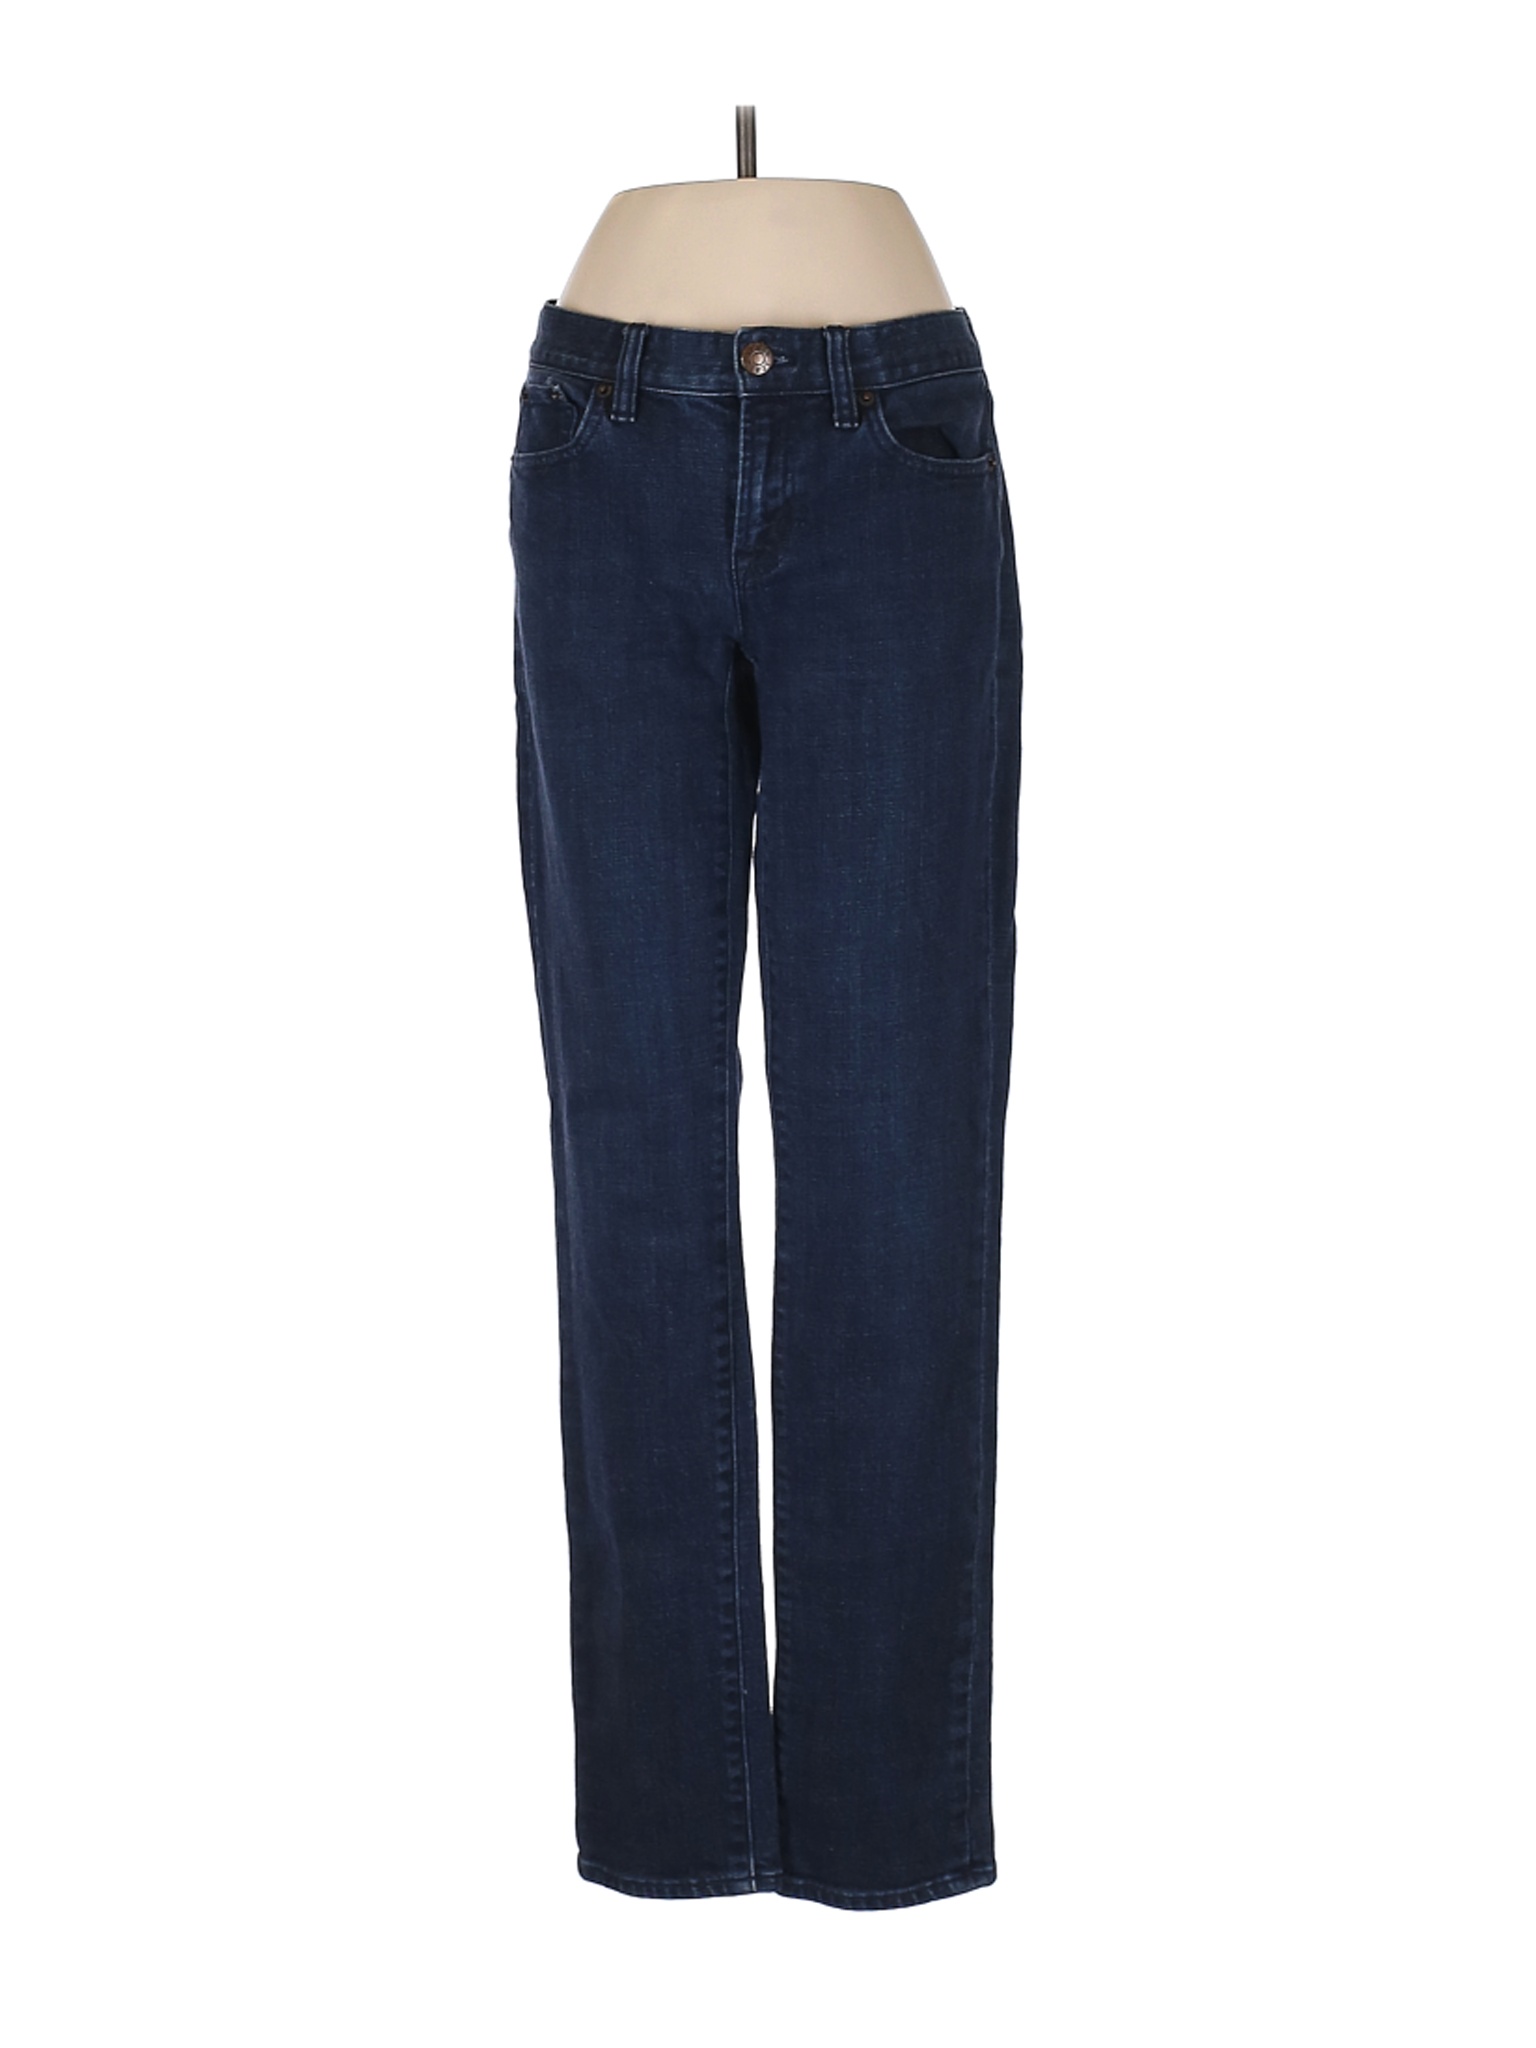 J.Crew Factory Store Women Blue Jeans 28W | eBay